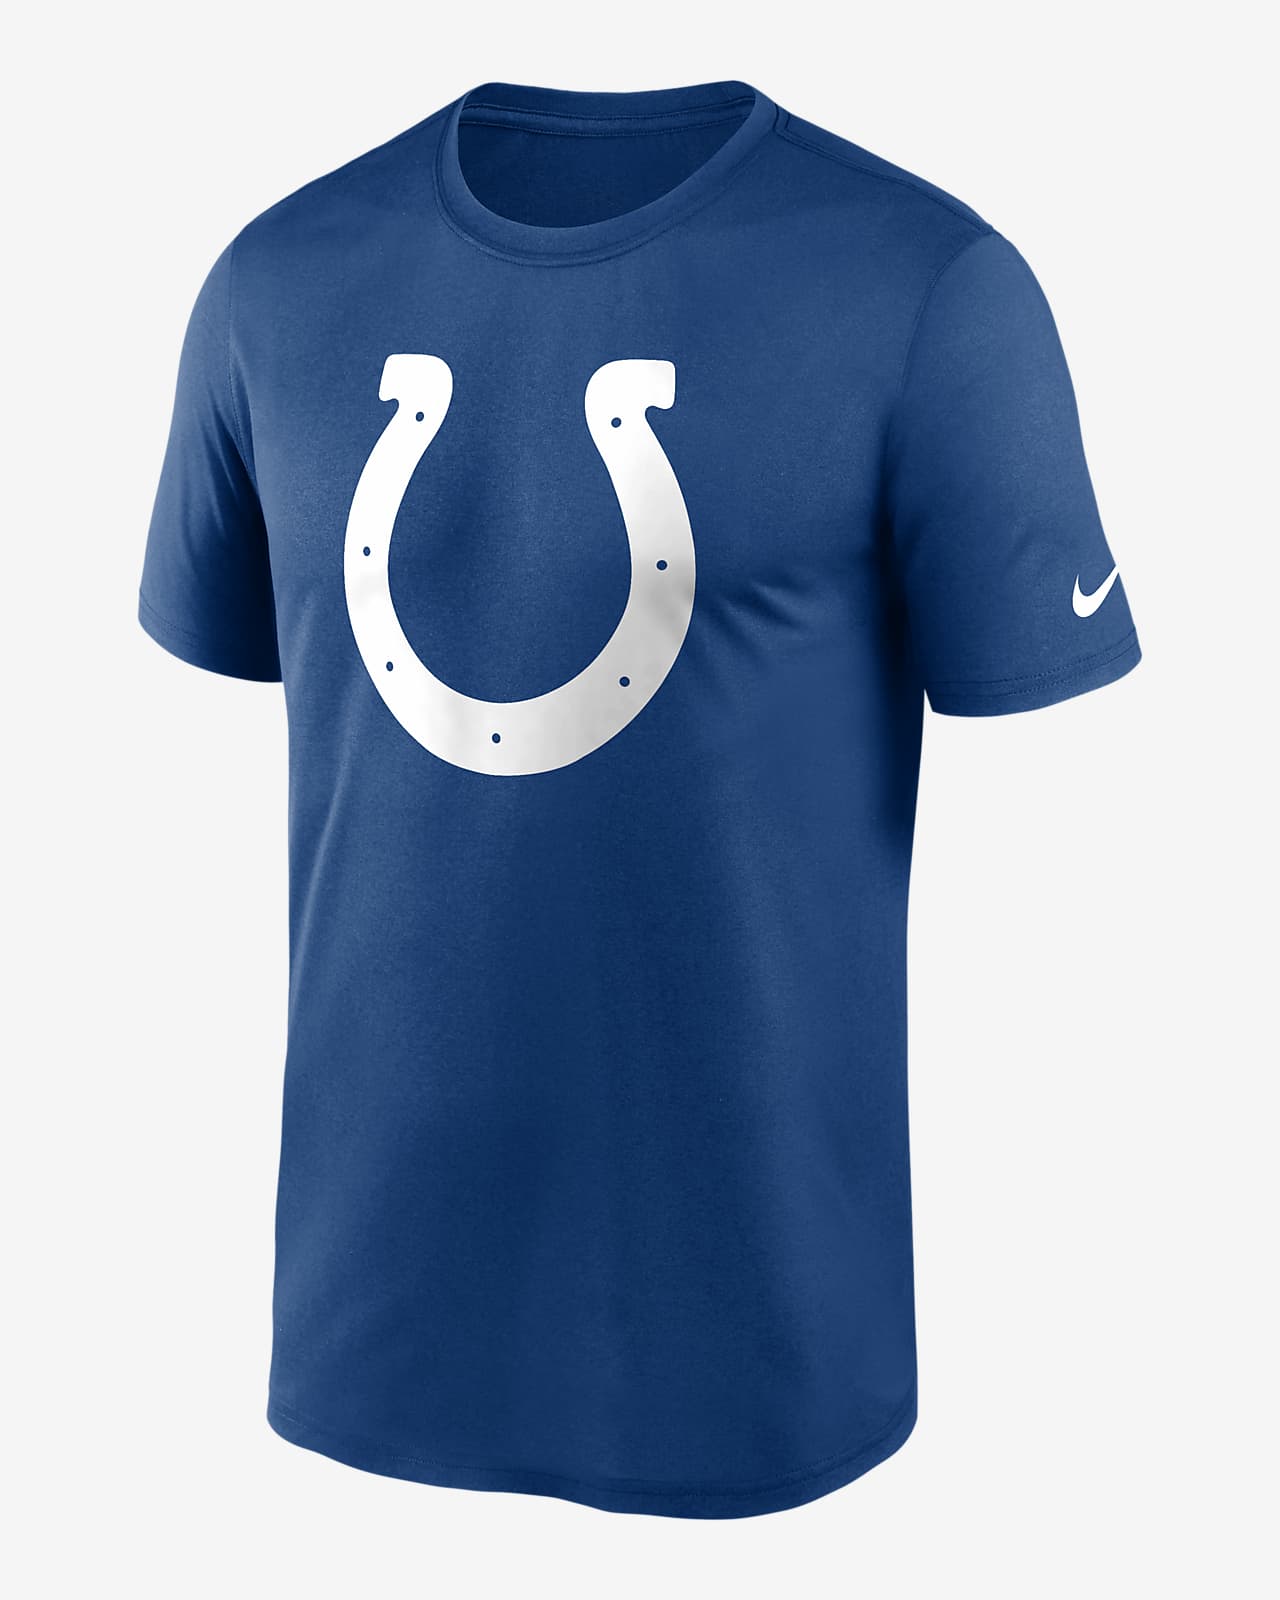 Playera para hombre Nike Dri-FIT Logo Legend (NFL Indianapolis Colts)